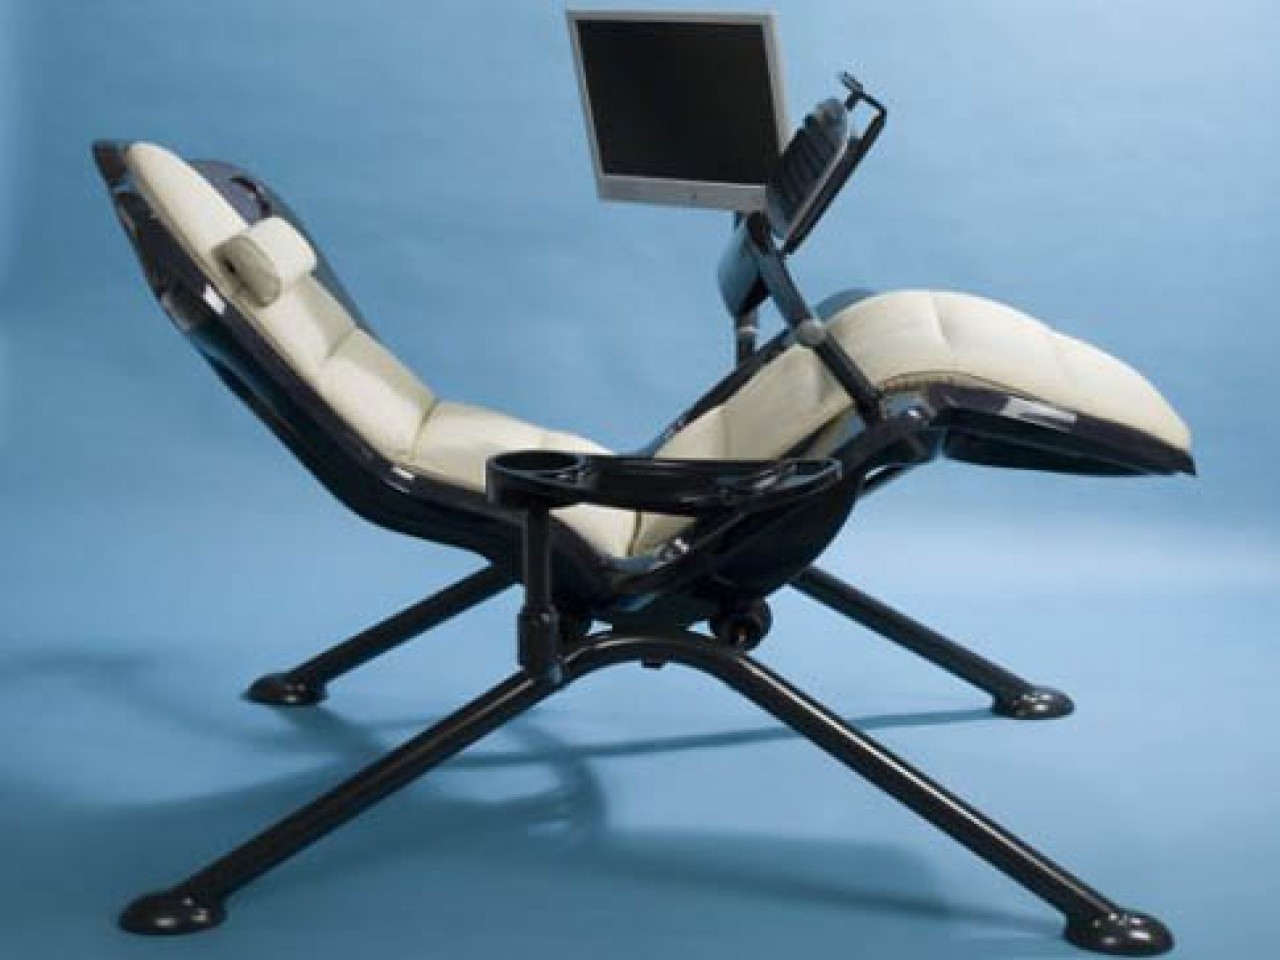 удобное и недорогое компьютерное кресло